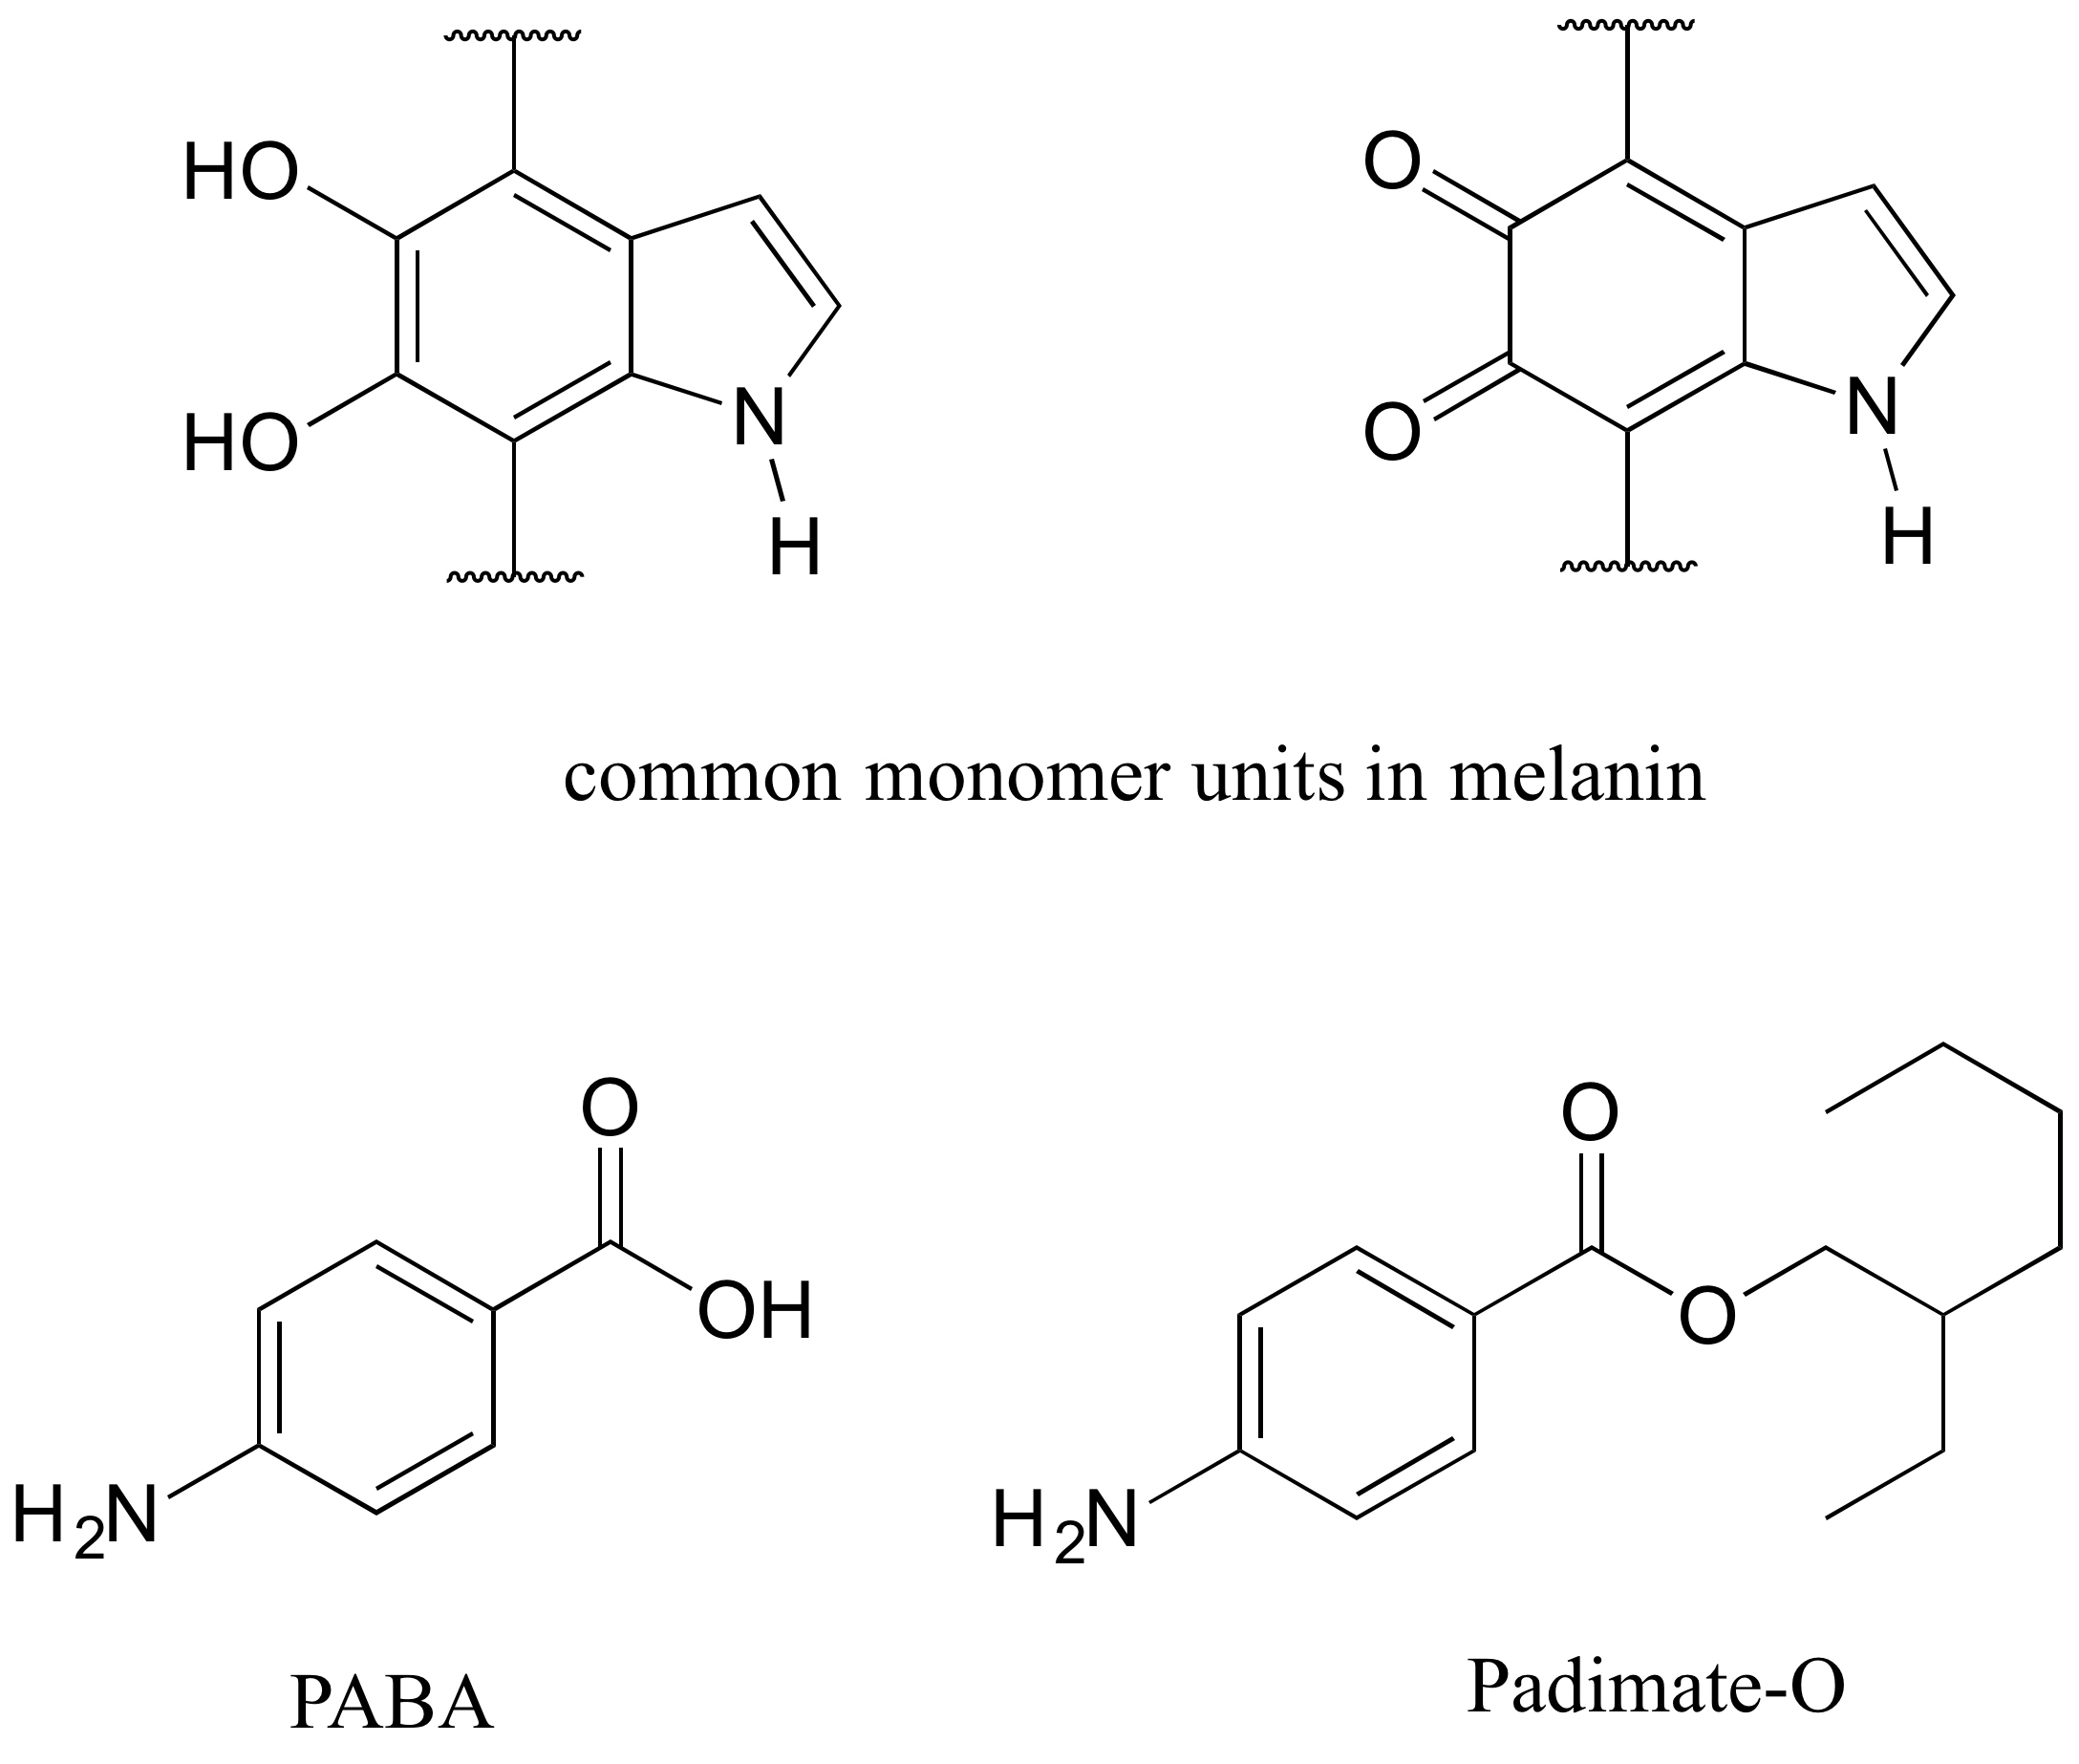 Arriba: dos moléculas etiquetadas con unidades monoméricas comunes en melanina. Abajo izquierda: Molécula PABA. Abajo a la derecha: Molécula Padimate-O.